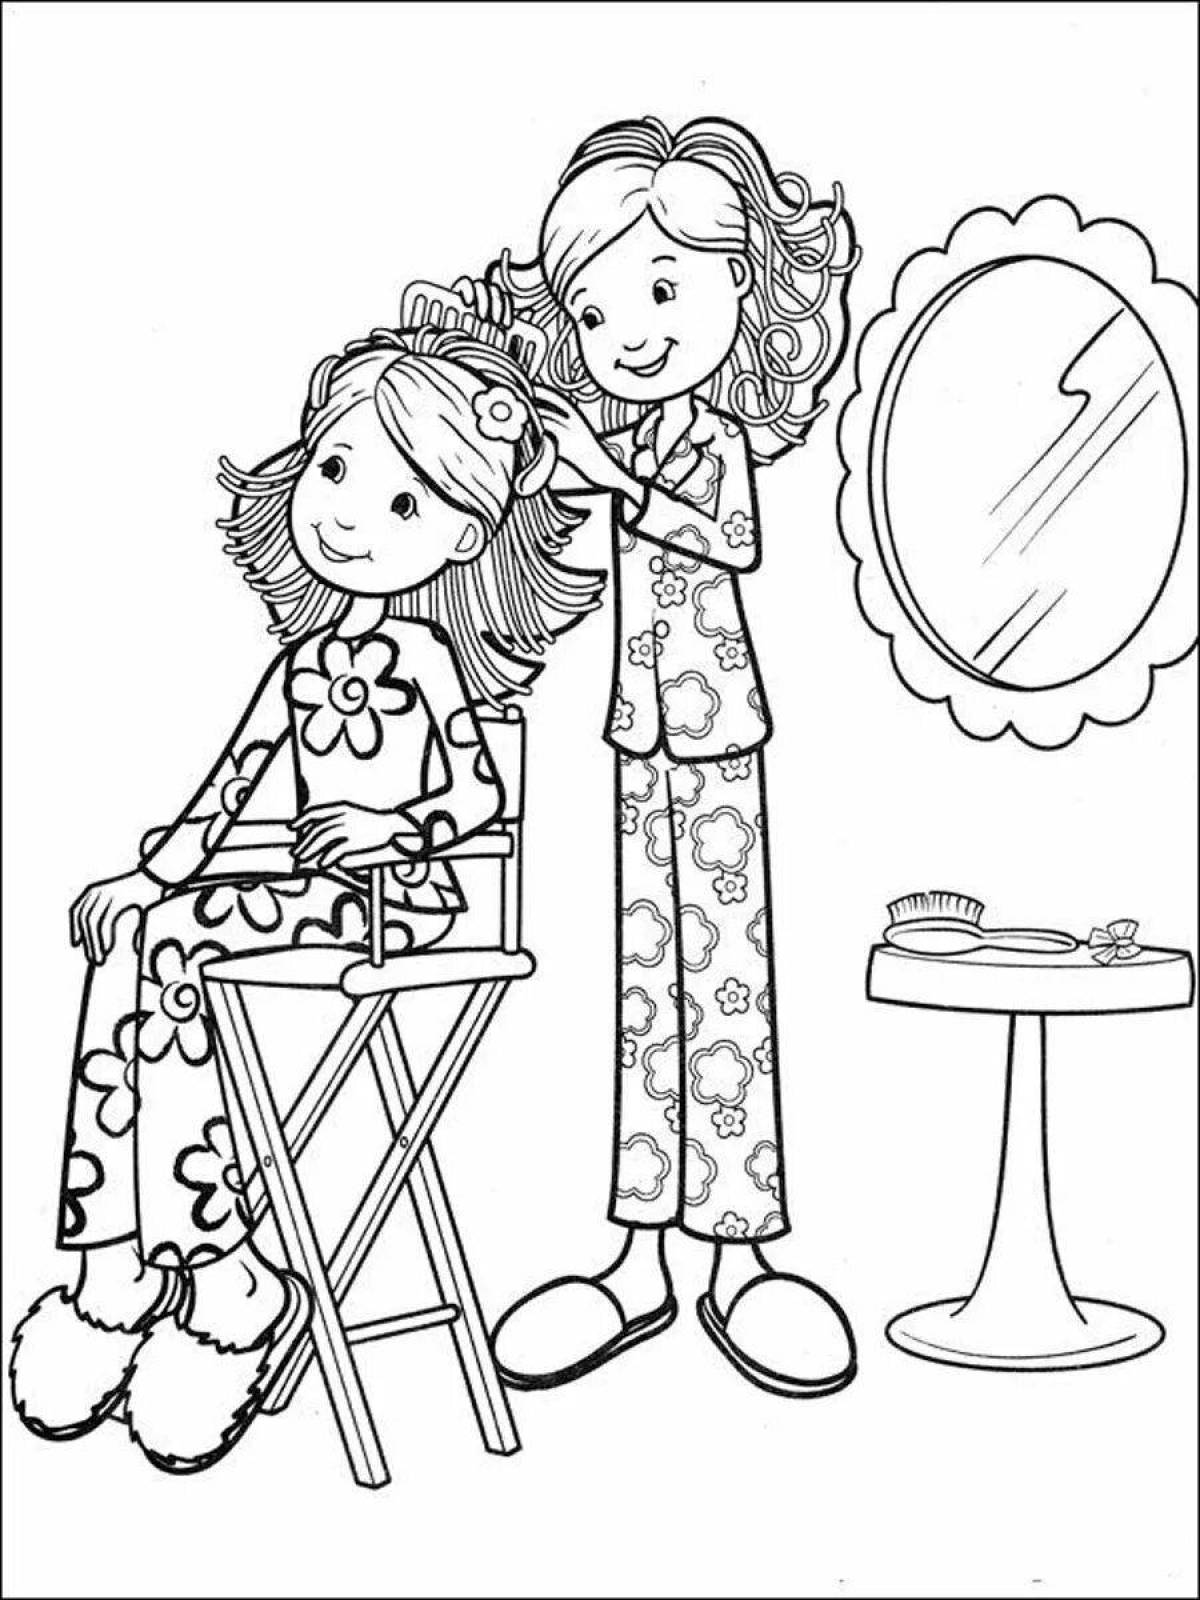 Веселая раскраска парикмахера для детей